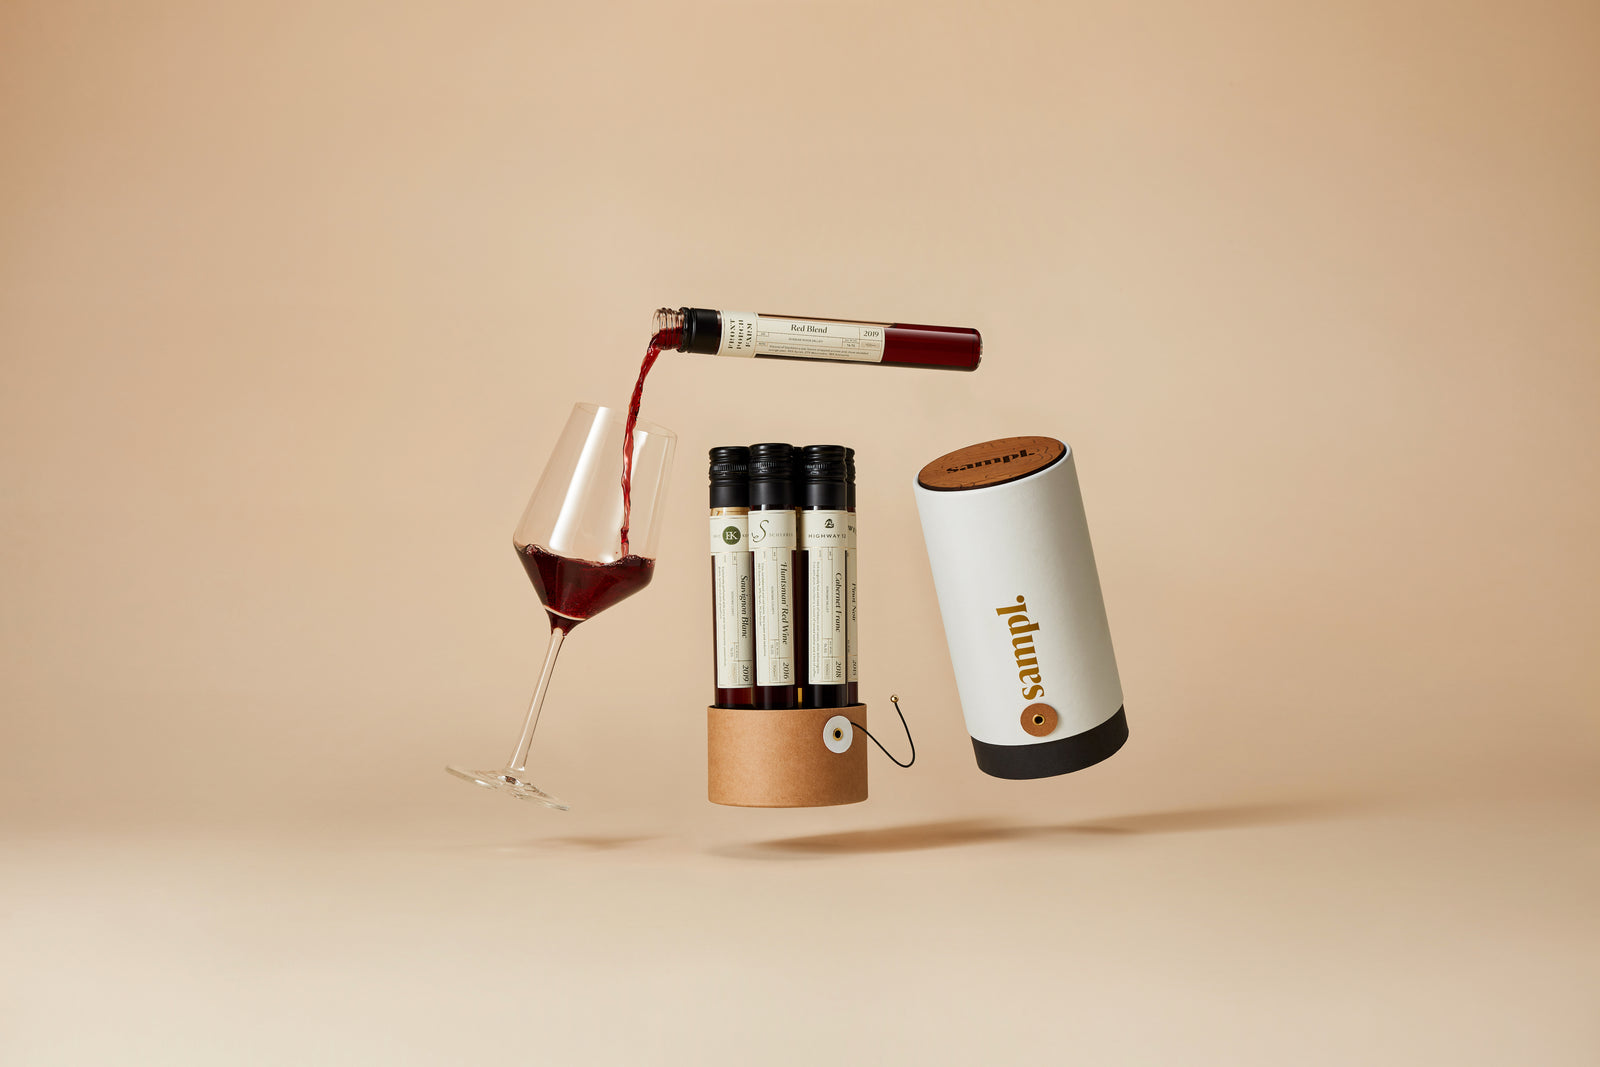 Sampl.02 - Paso Robles - Wine Tasting Kit-30% OFF 🍷